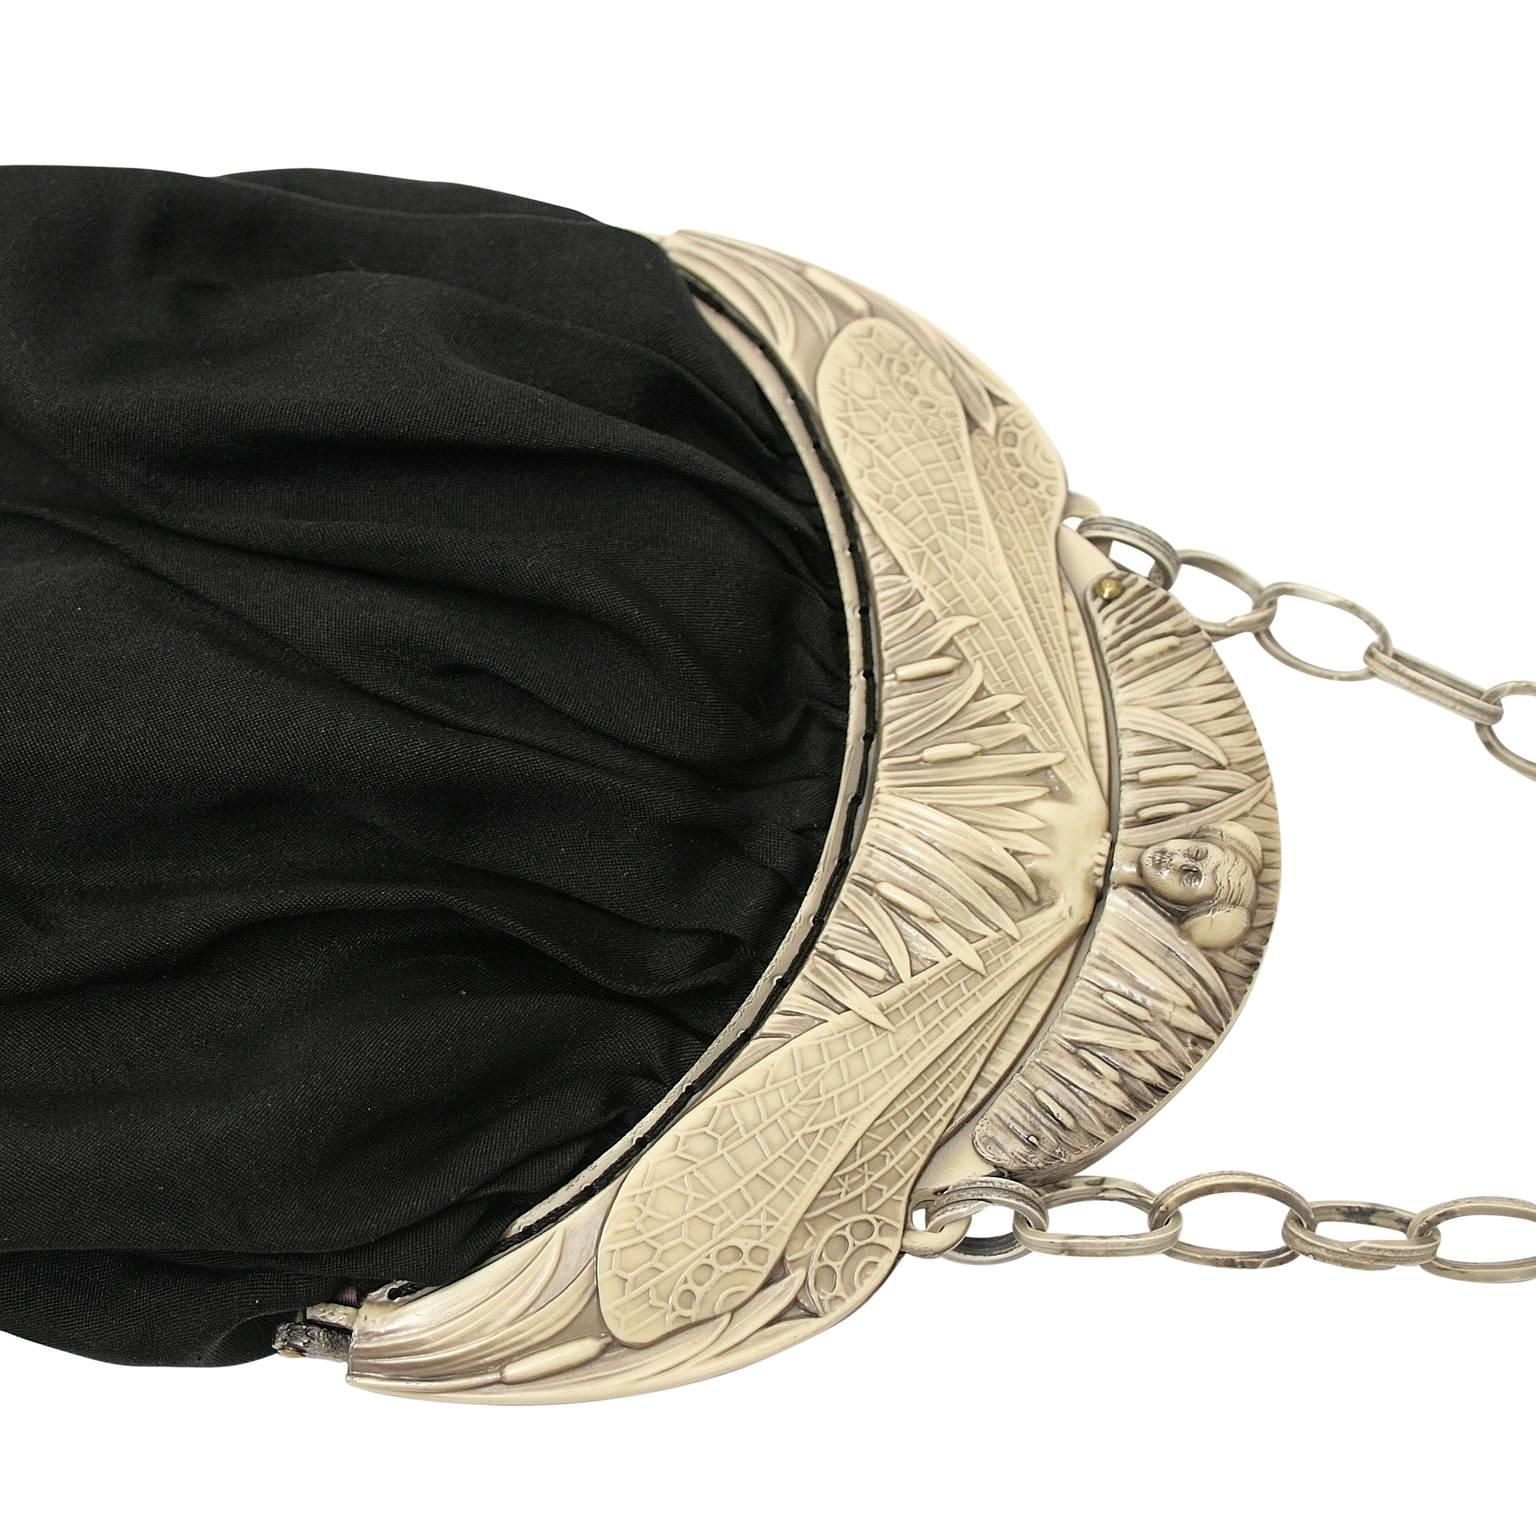 Women's 1910s Art Nouveau Black Silk and Celluloid Vintage Evening Bag